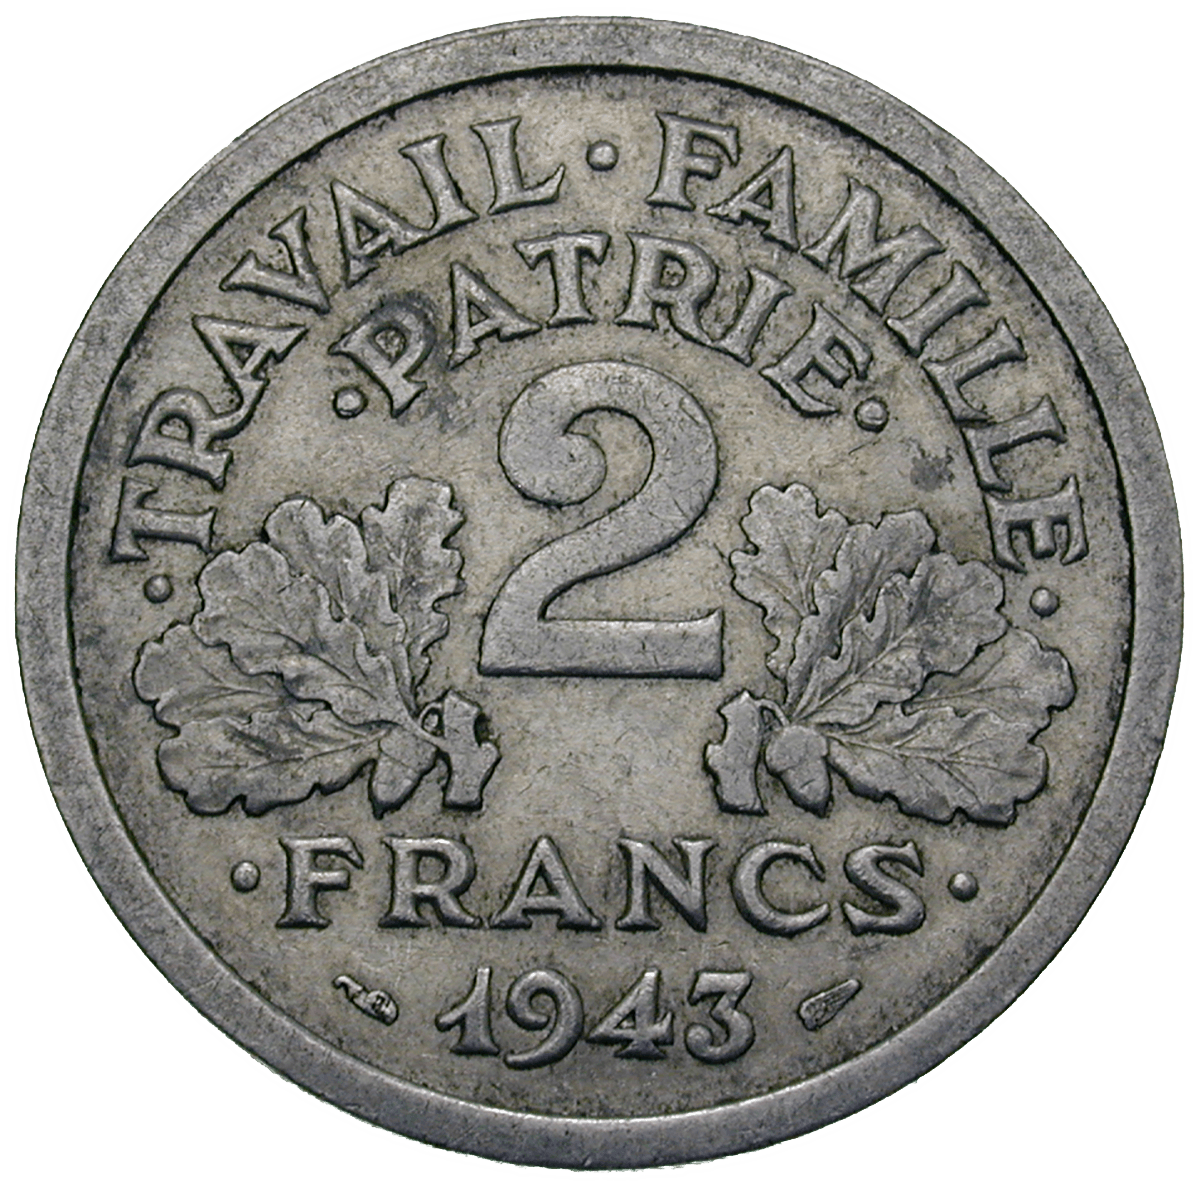 Frankreich, Etat Français, Philippe Pétain, 2 Francs 1943 (reverse)